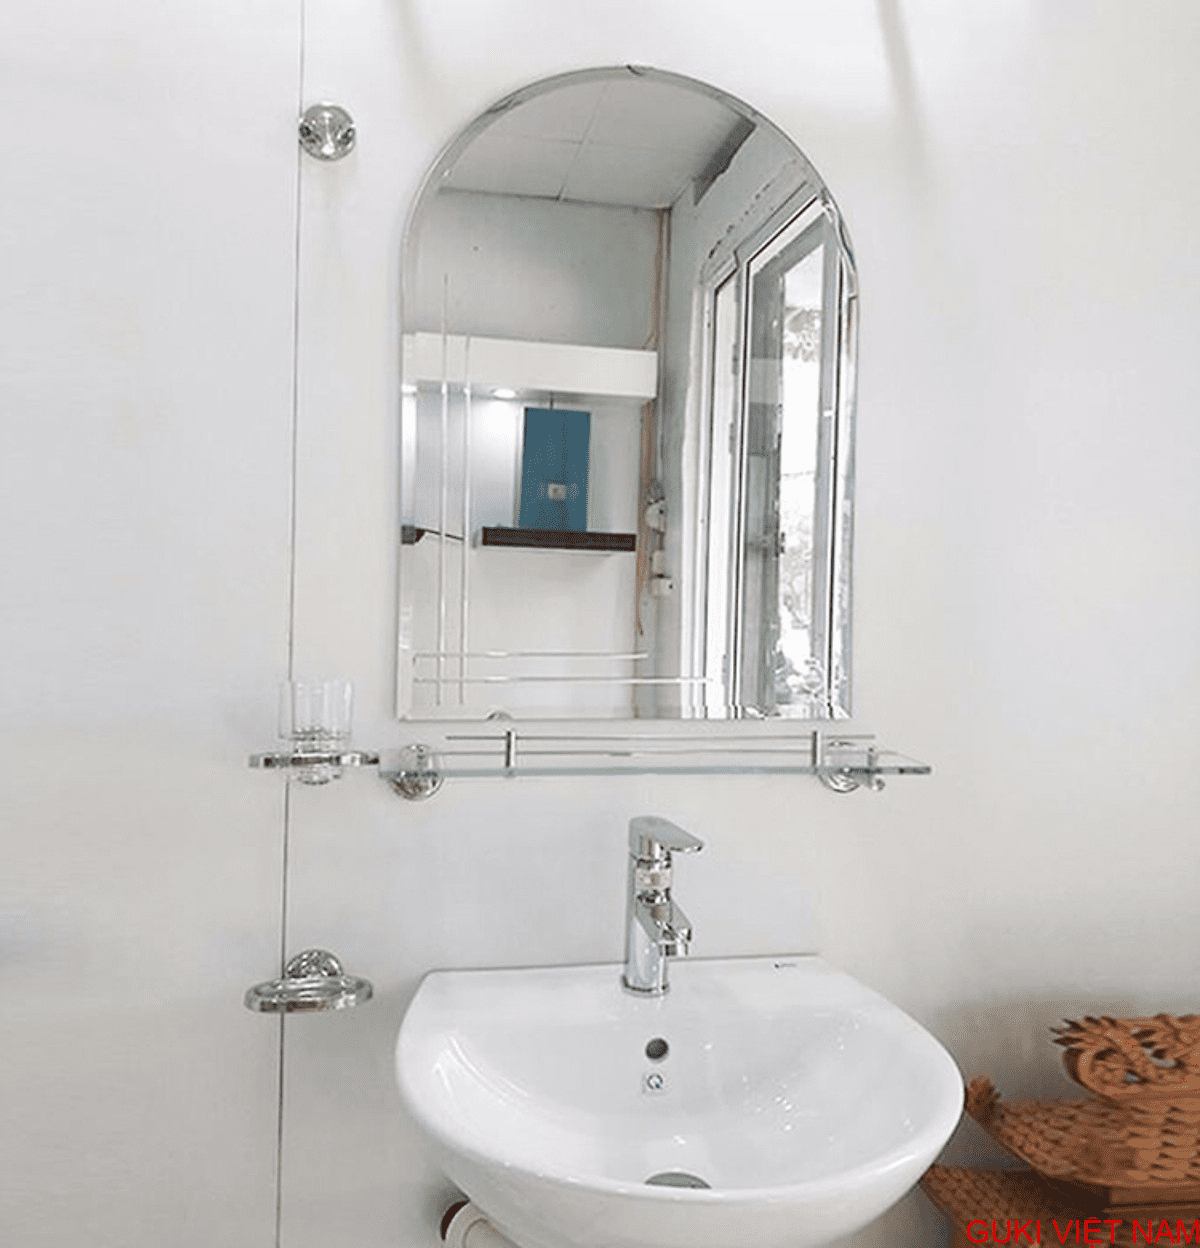 Kệ gương kính phòng tắm GUKI
Hãy trang trí phòng tắm của bạn trở nên đẳng cấp hơn với kệ gương kính phòng tắm GUKI. Sản phẩm được thiết kế độc đáo, sang trọng và tinh tế, đảm bảo sự ổn định và an toàn bởi chất liệu kính cường lực chắc chắn. Với kiểu dáng hiện đại, sản phẩm sẽ tạo điểm nhấn cho không gian phòng tắm của bạn.